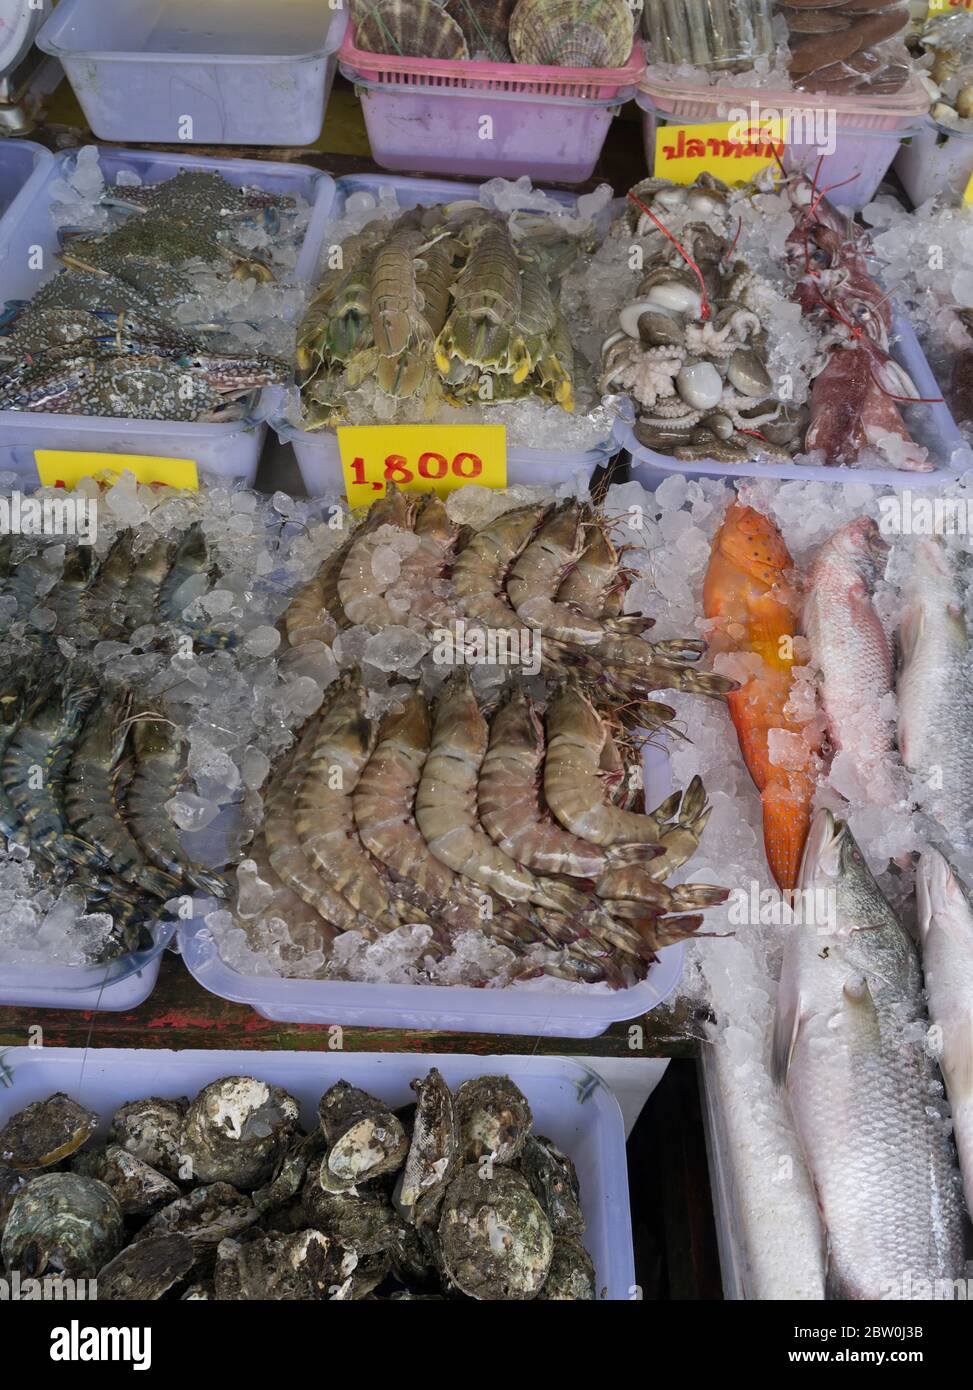 dh Rawai mercato del pesce PHUKET THAILANDIA Fishmongers frutti di mare prodotti stalli mercati pesce ghiaccio gamberi thailandesi Foto Stock